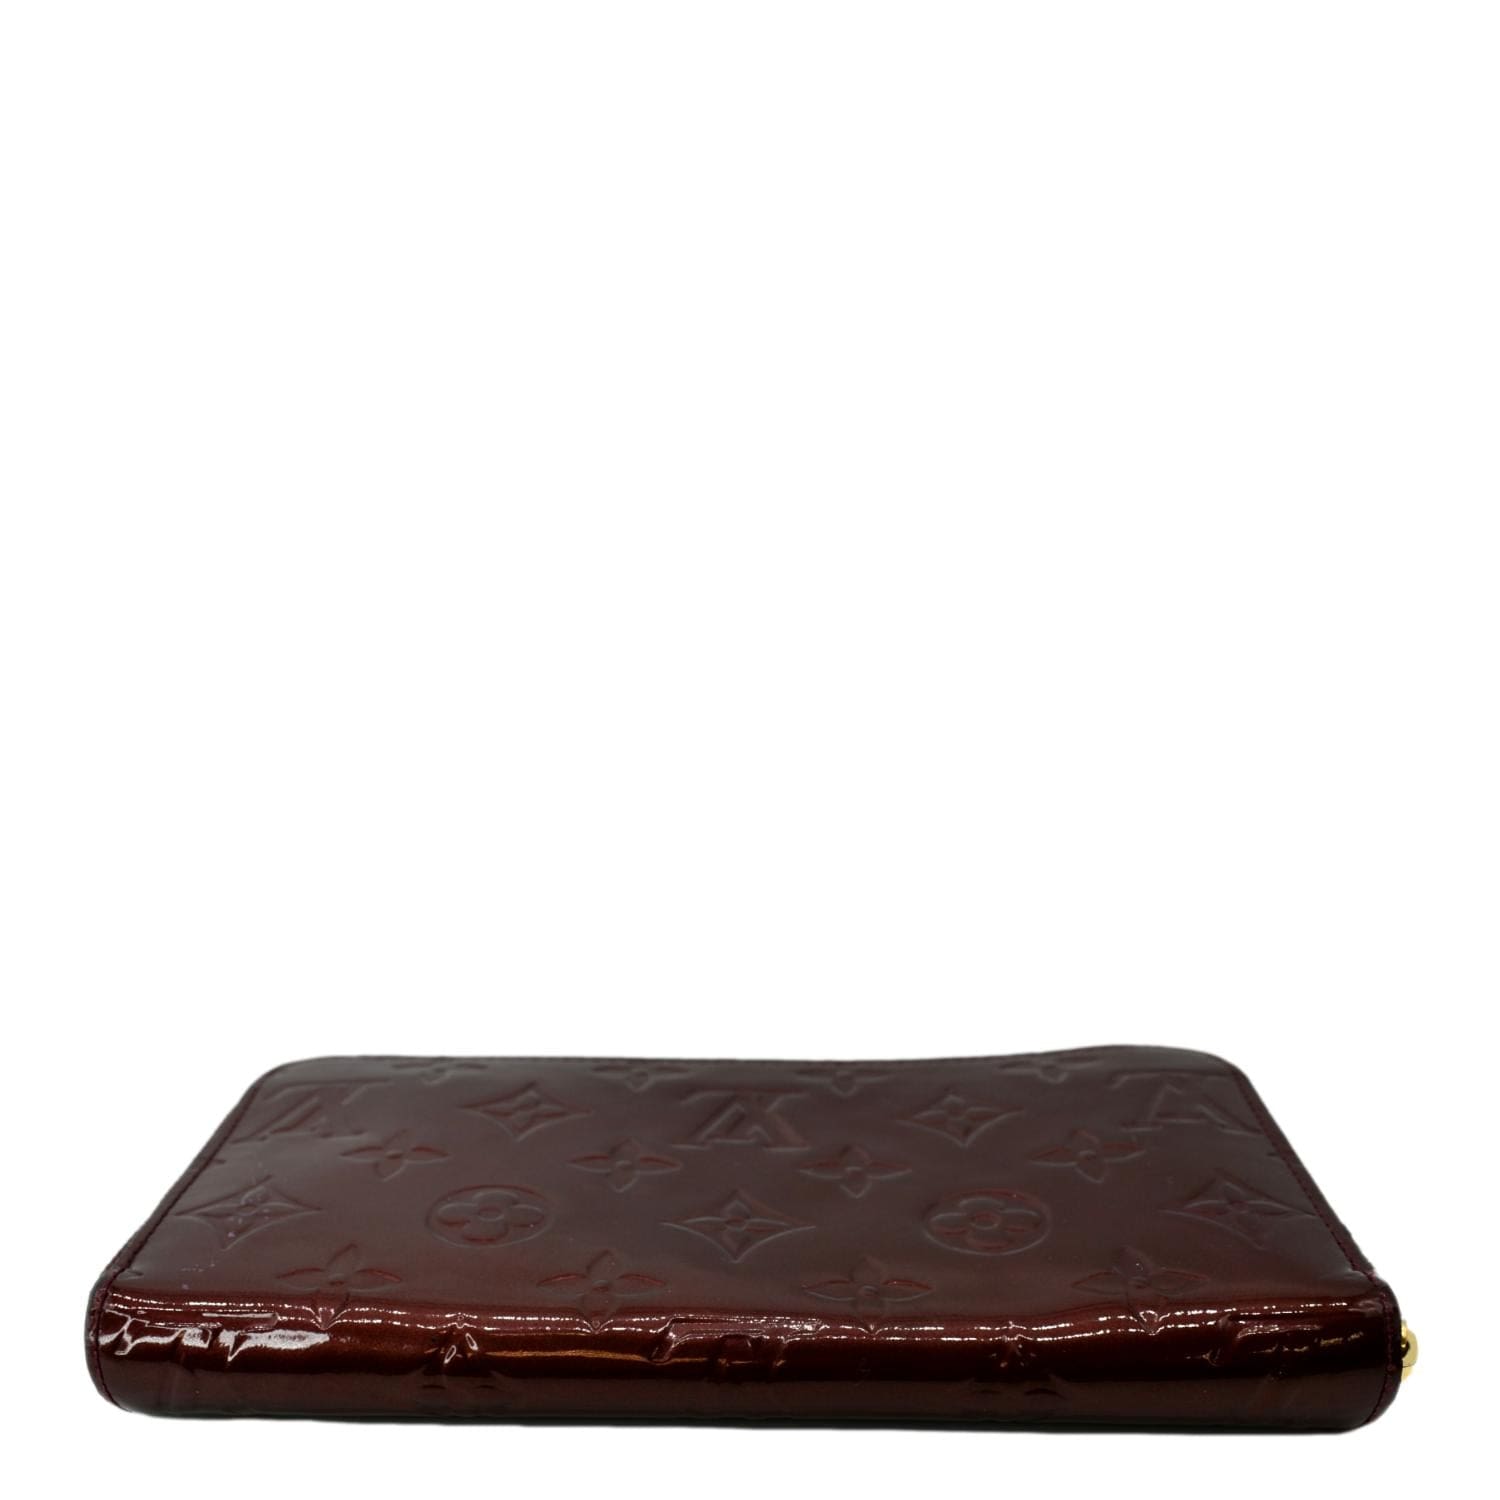 Rue La La Louis Vuitton Amarante Monogram Vernis Leather Zippy Wallet  (Authentic Pre-Owned) 599.00